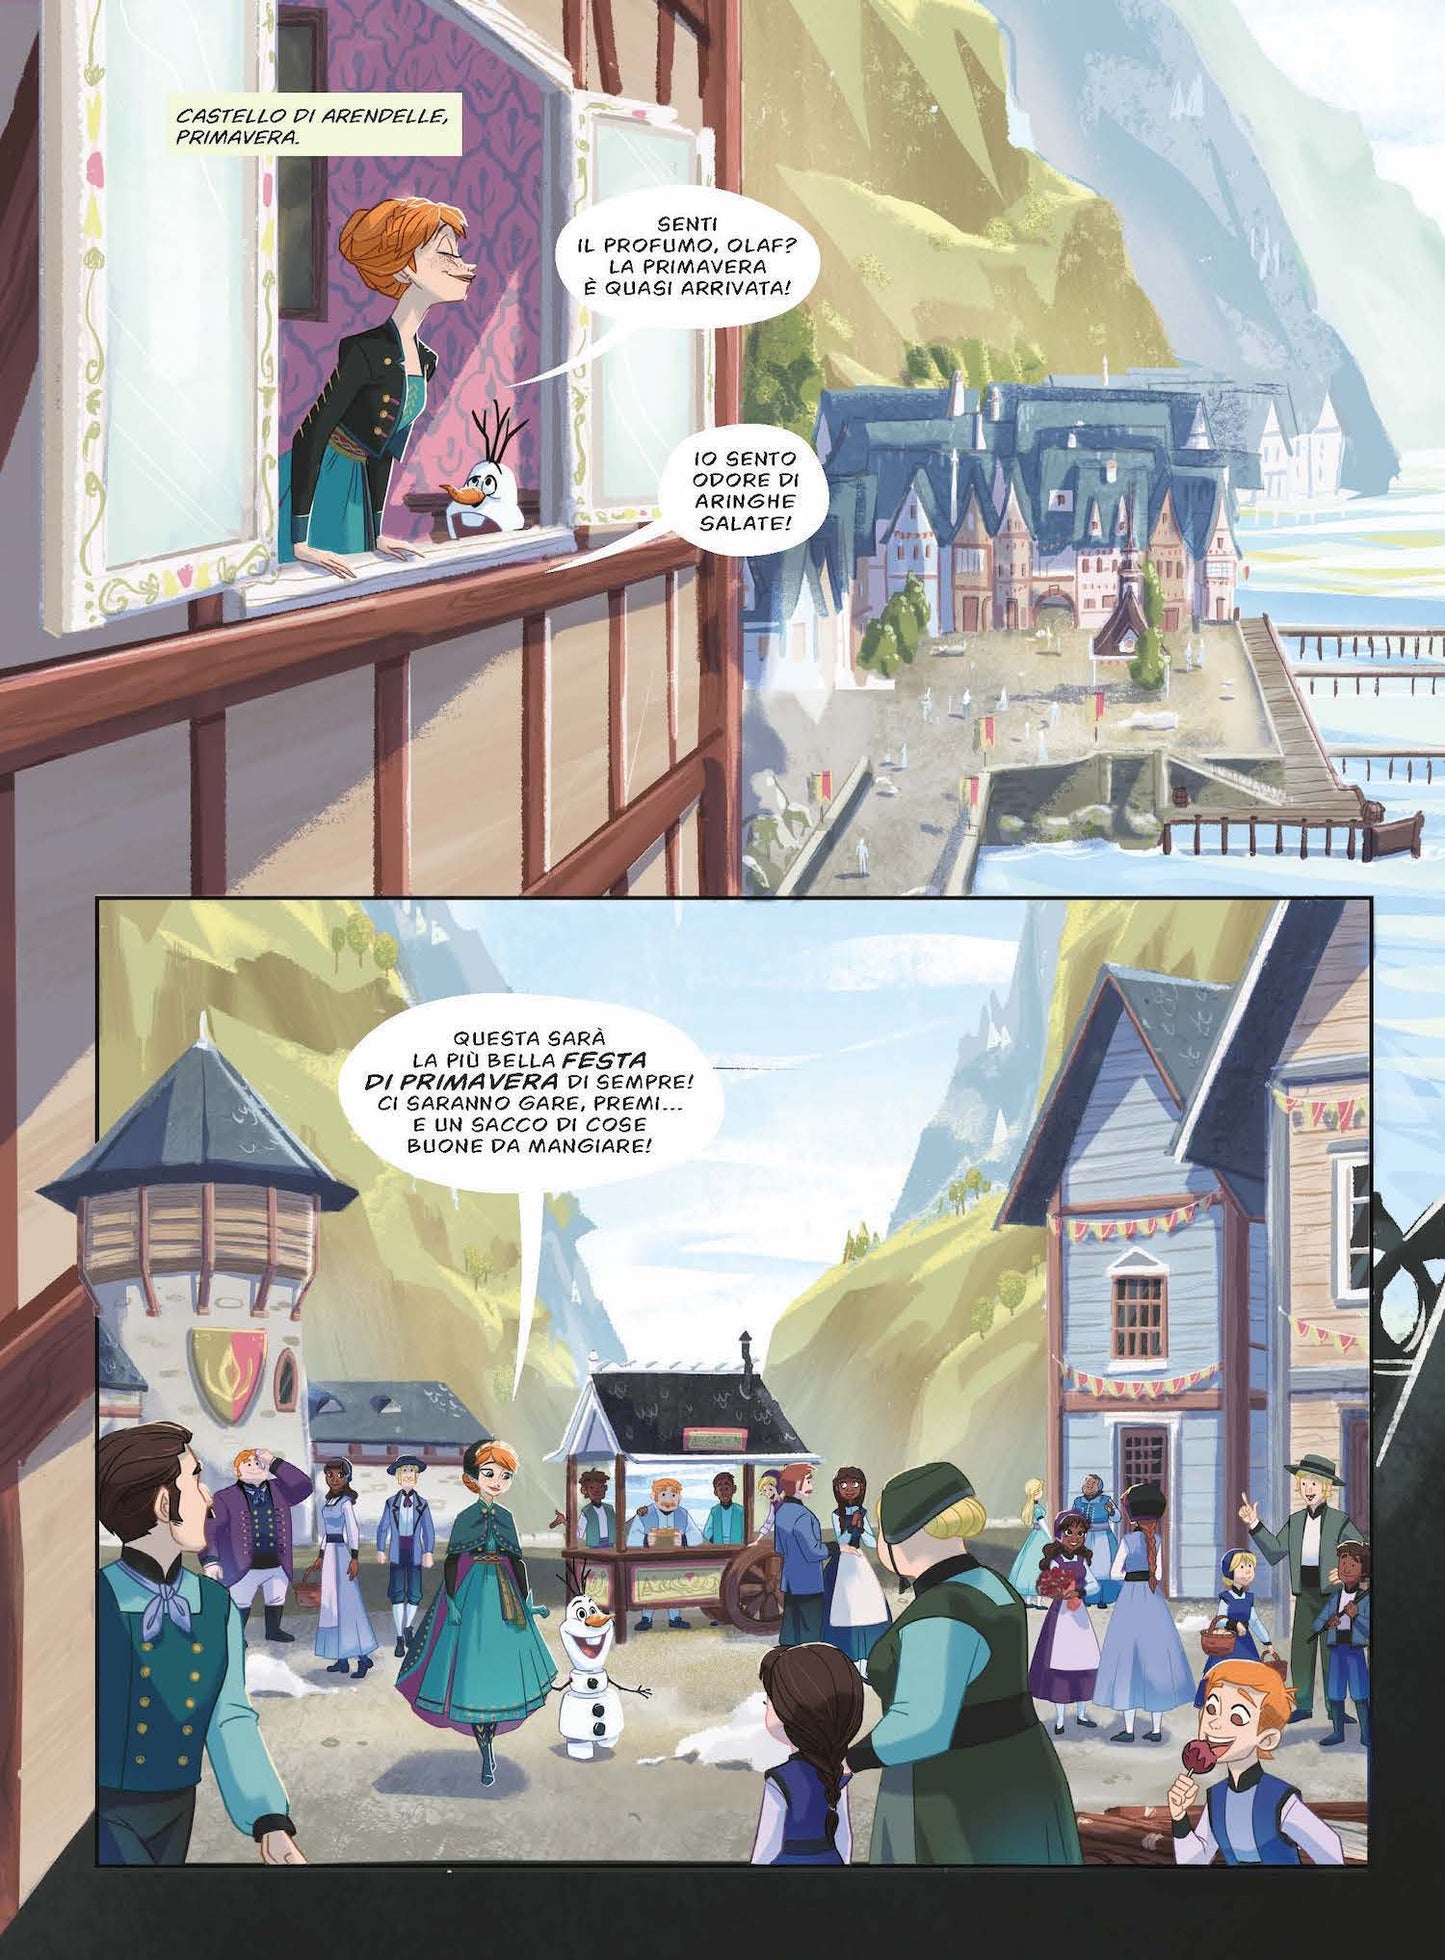 Disney Princess - L'avventura di Anna::Un'avventura illustrata e a fumetti